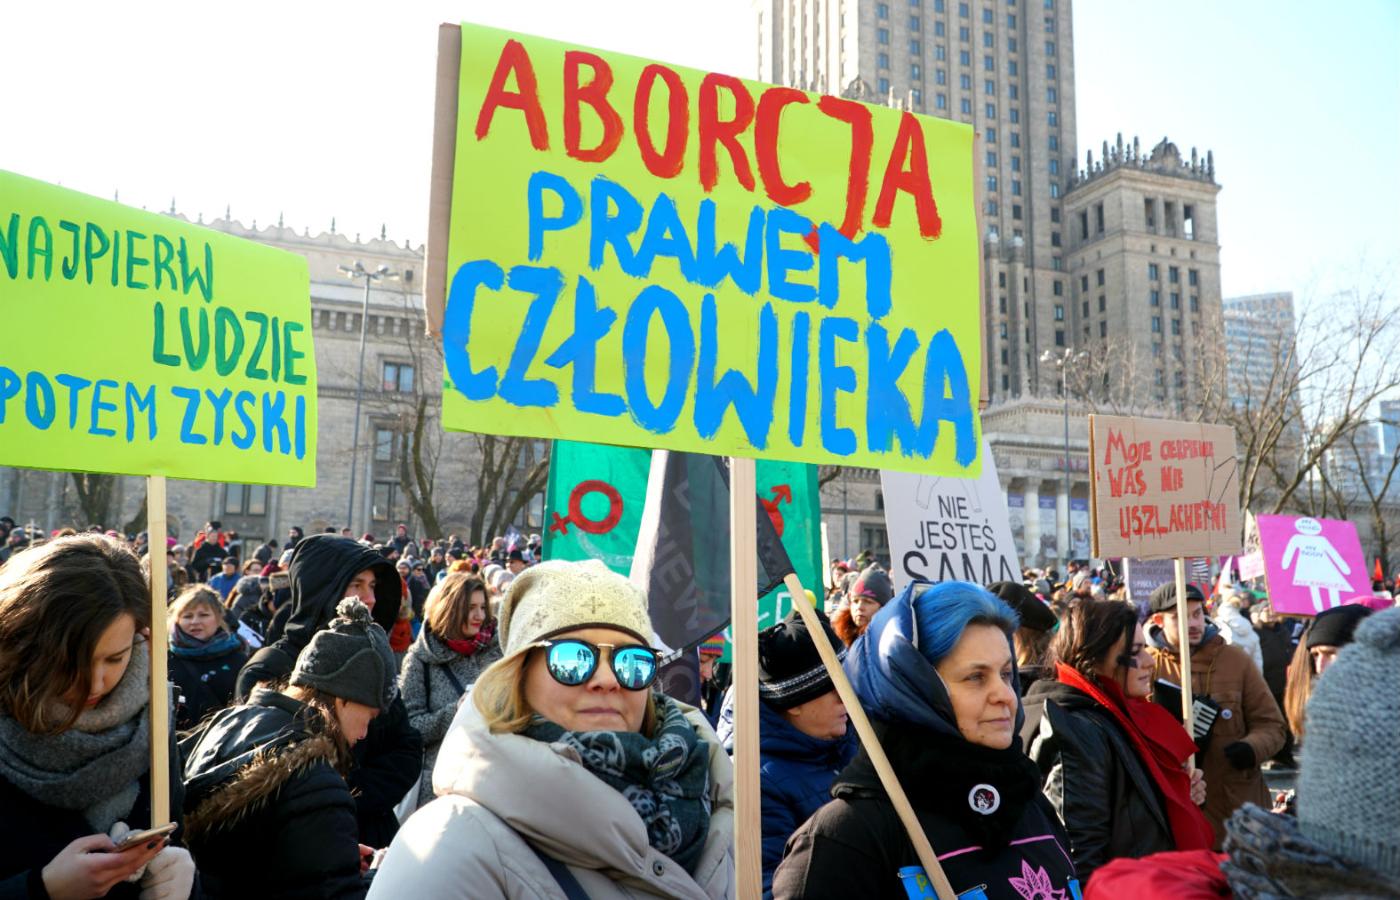 Ogólnopolski Strajk Kobiet zapowiedział kolejny protest w związku z zaostrzeniem się publicznego sporu na temat prawa do przerywania ciąży.